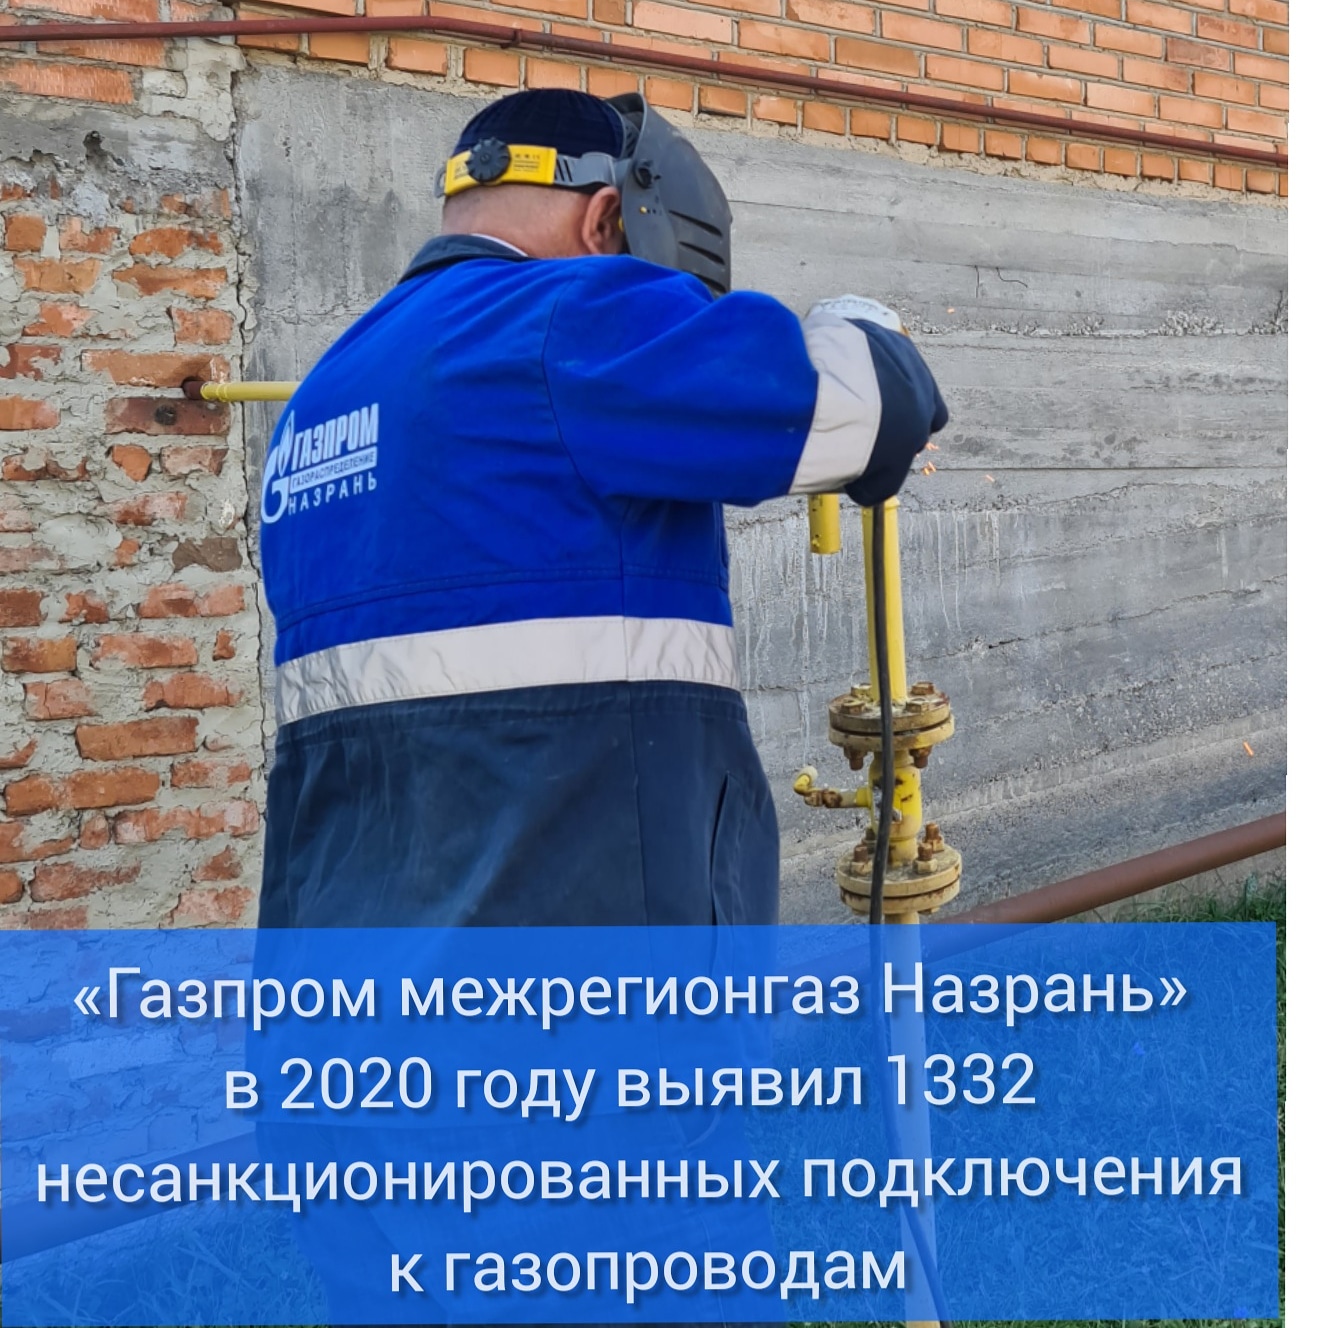 «Газпром межрегионгаз Назрань» в 2020 году выявил 1332 несанкционированных подключения к газопроводам